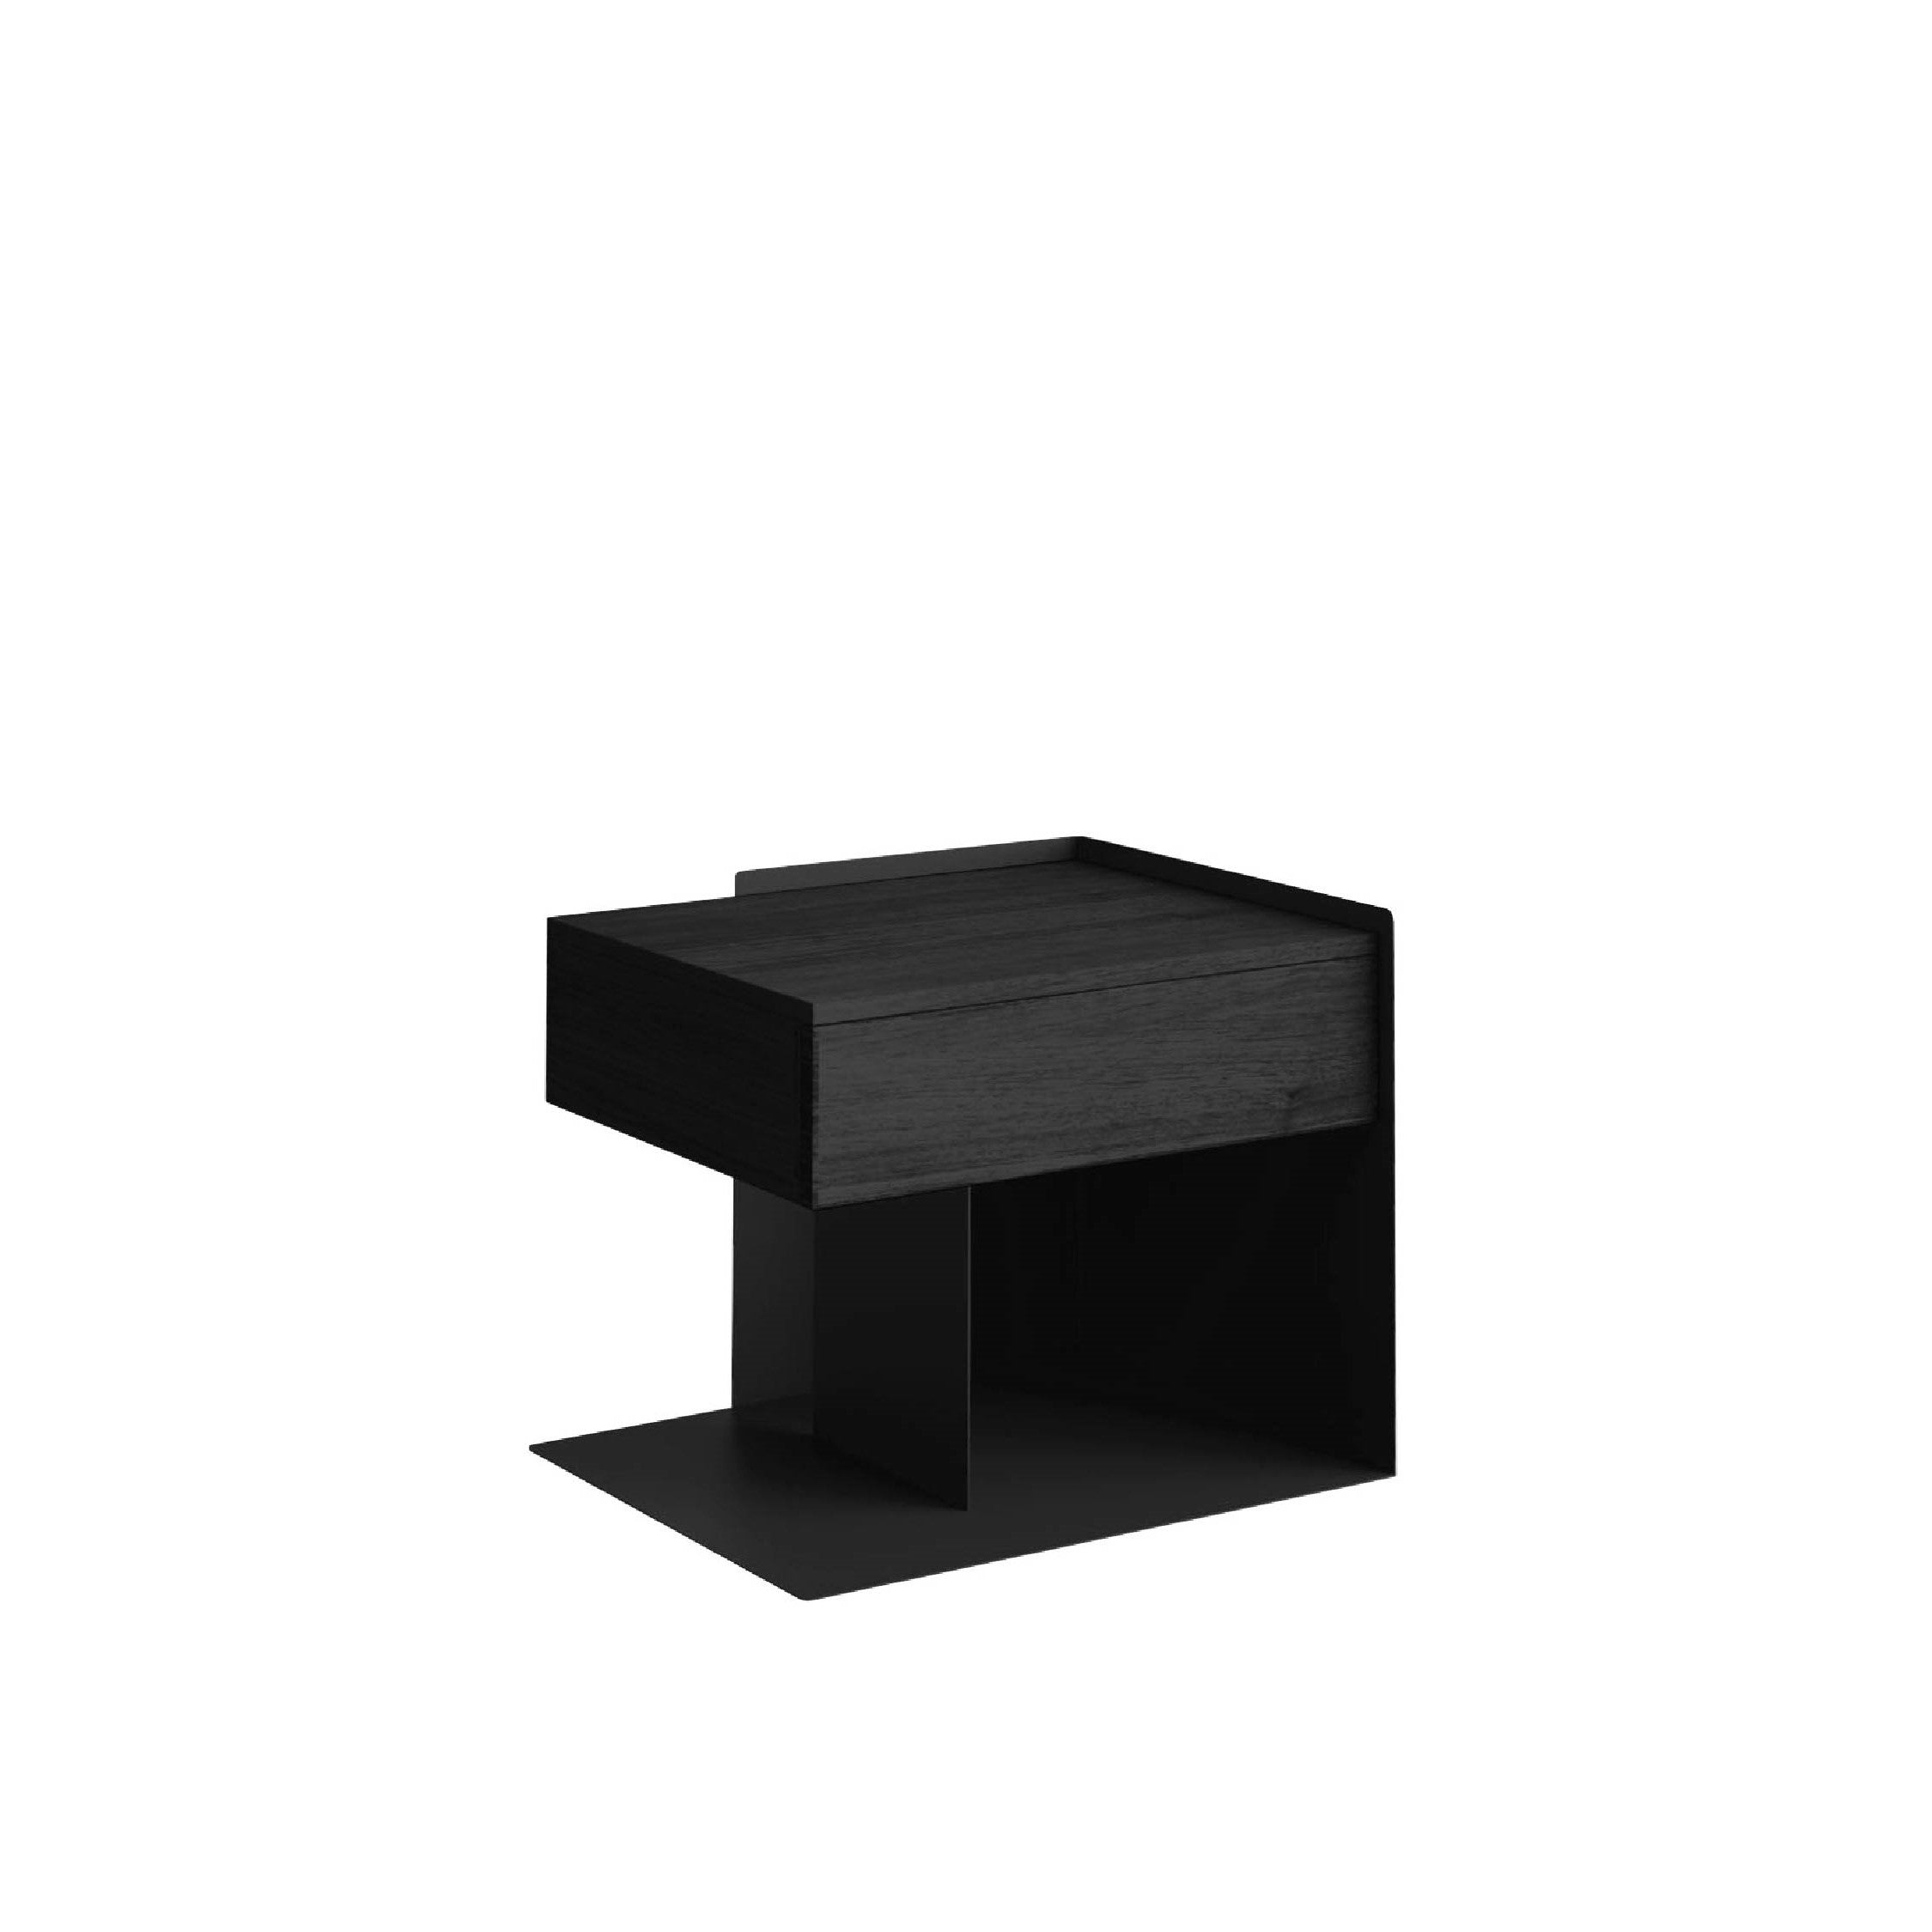 ESSIMETRI Side Table All Black V3.0